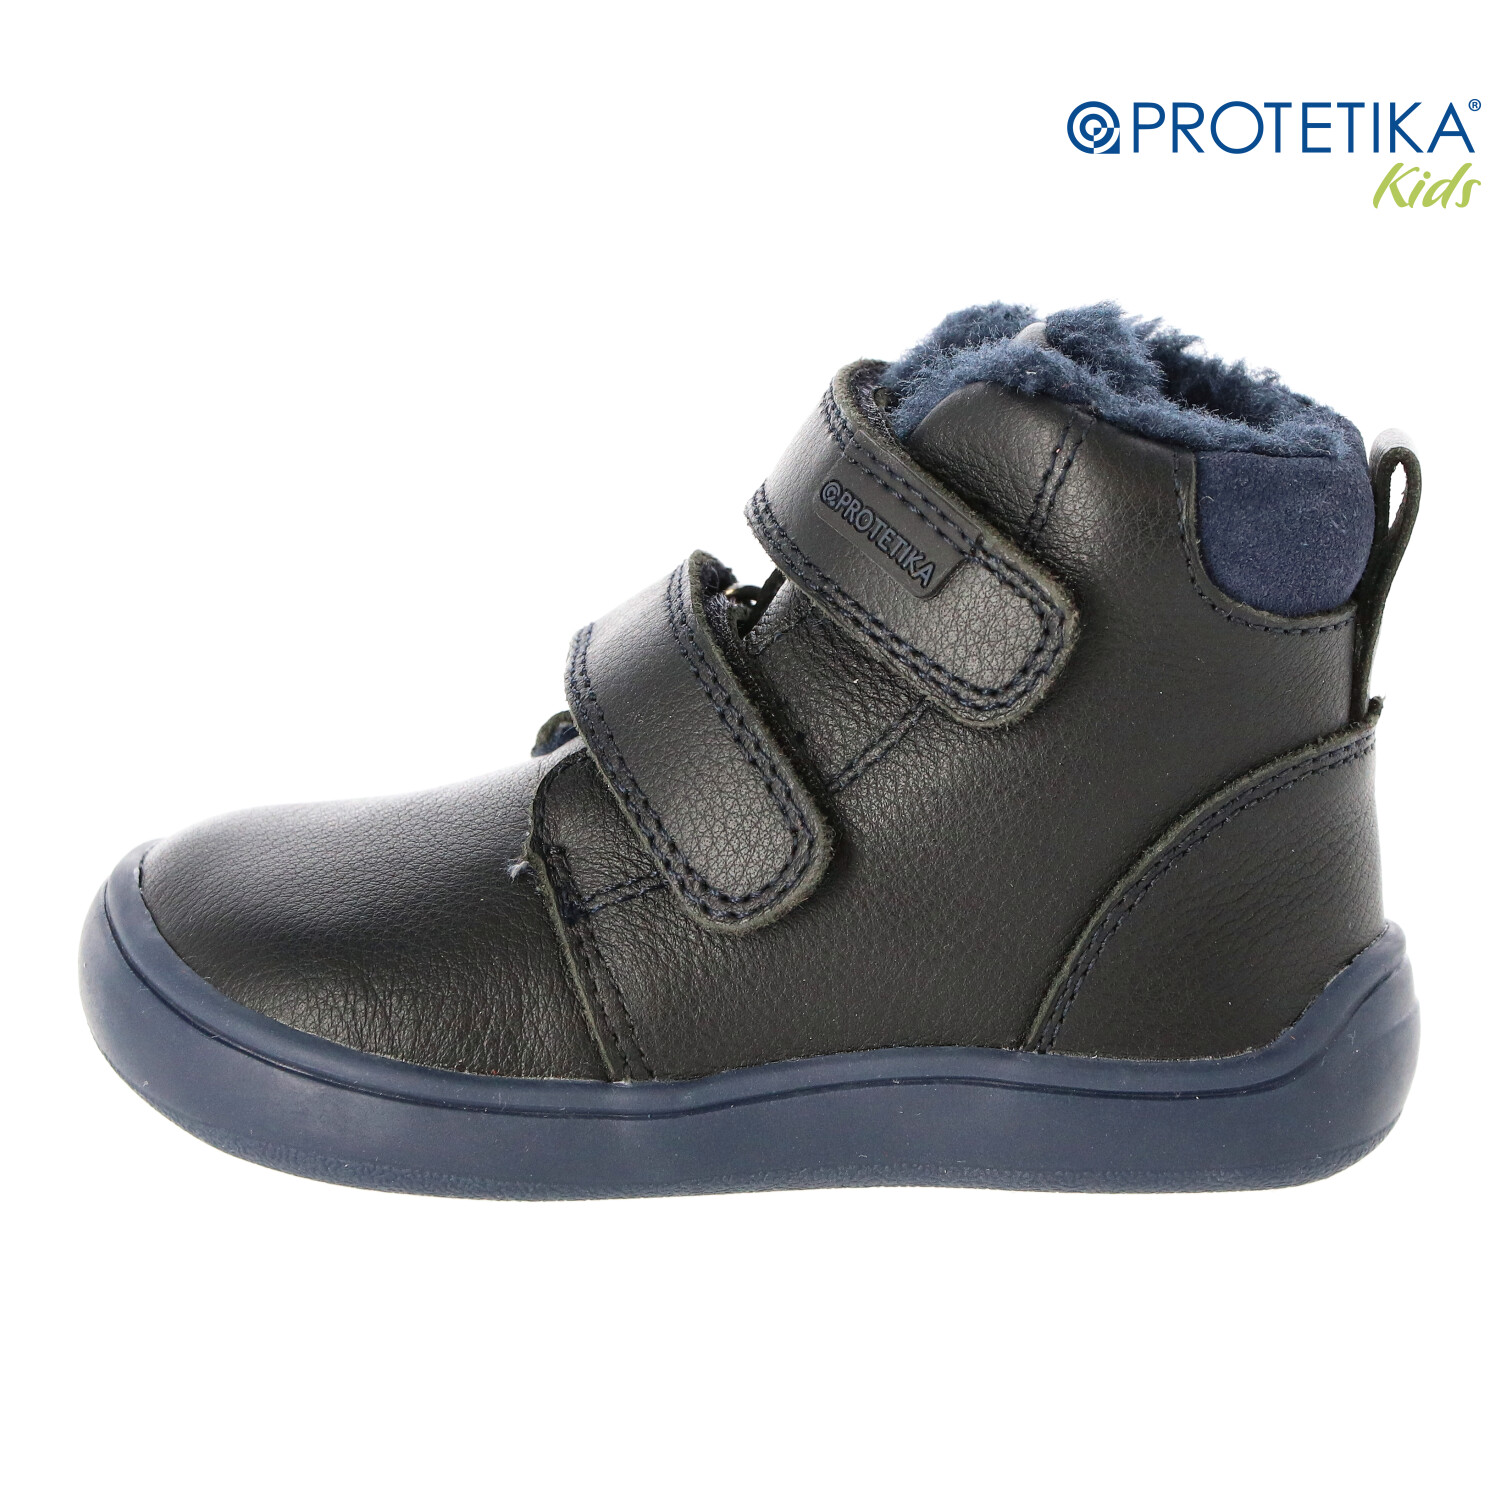 Protetika - zimné barefootové topánky DENY black - zateplené kožušinkou